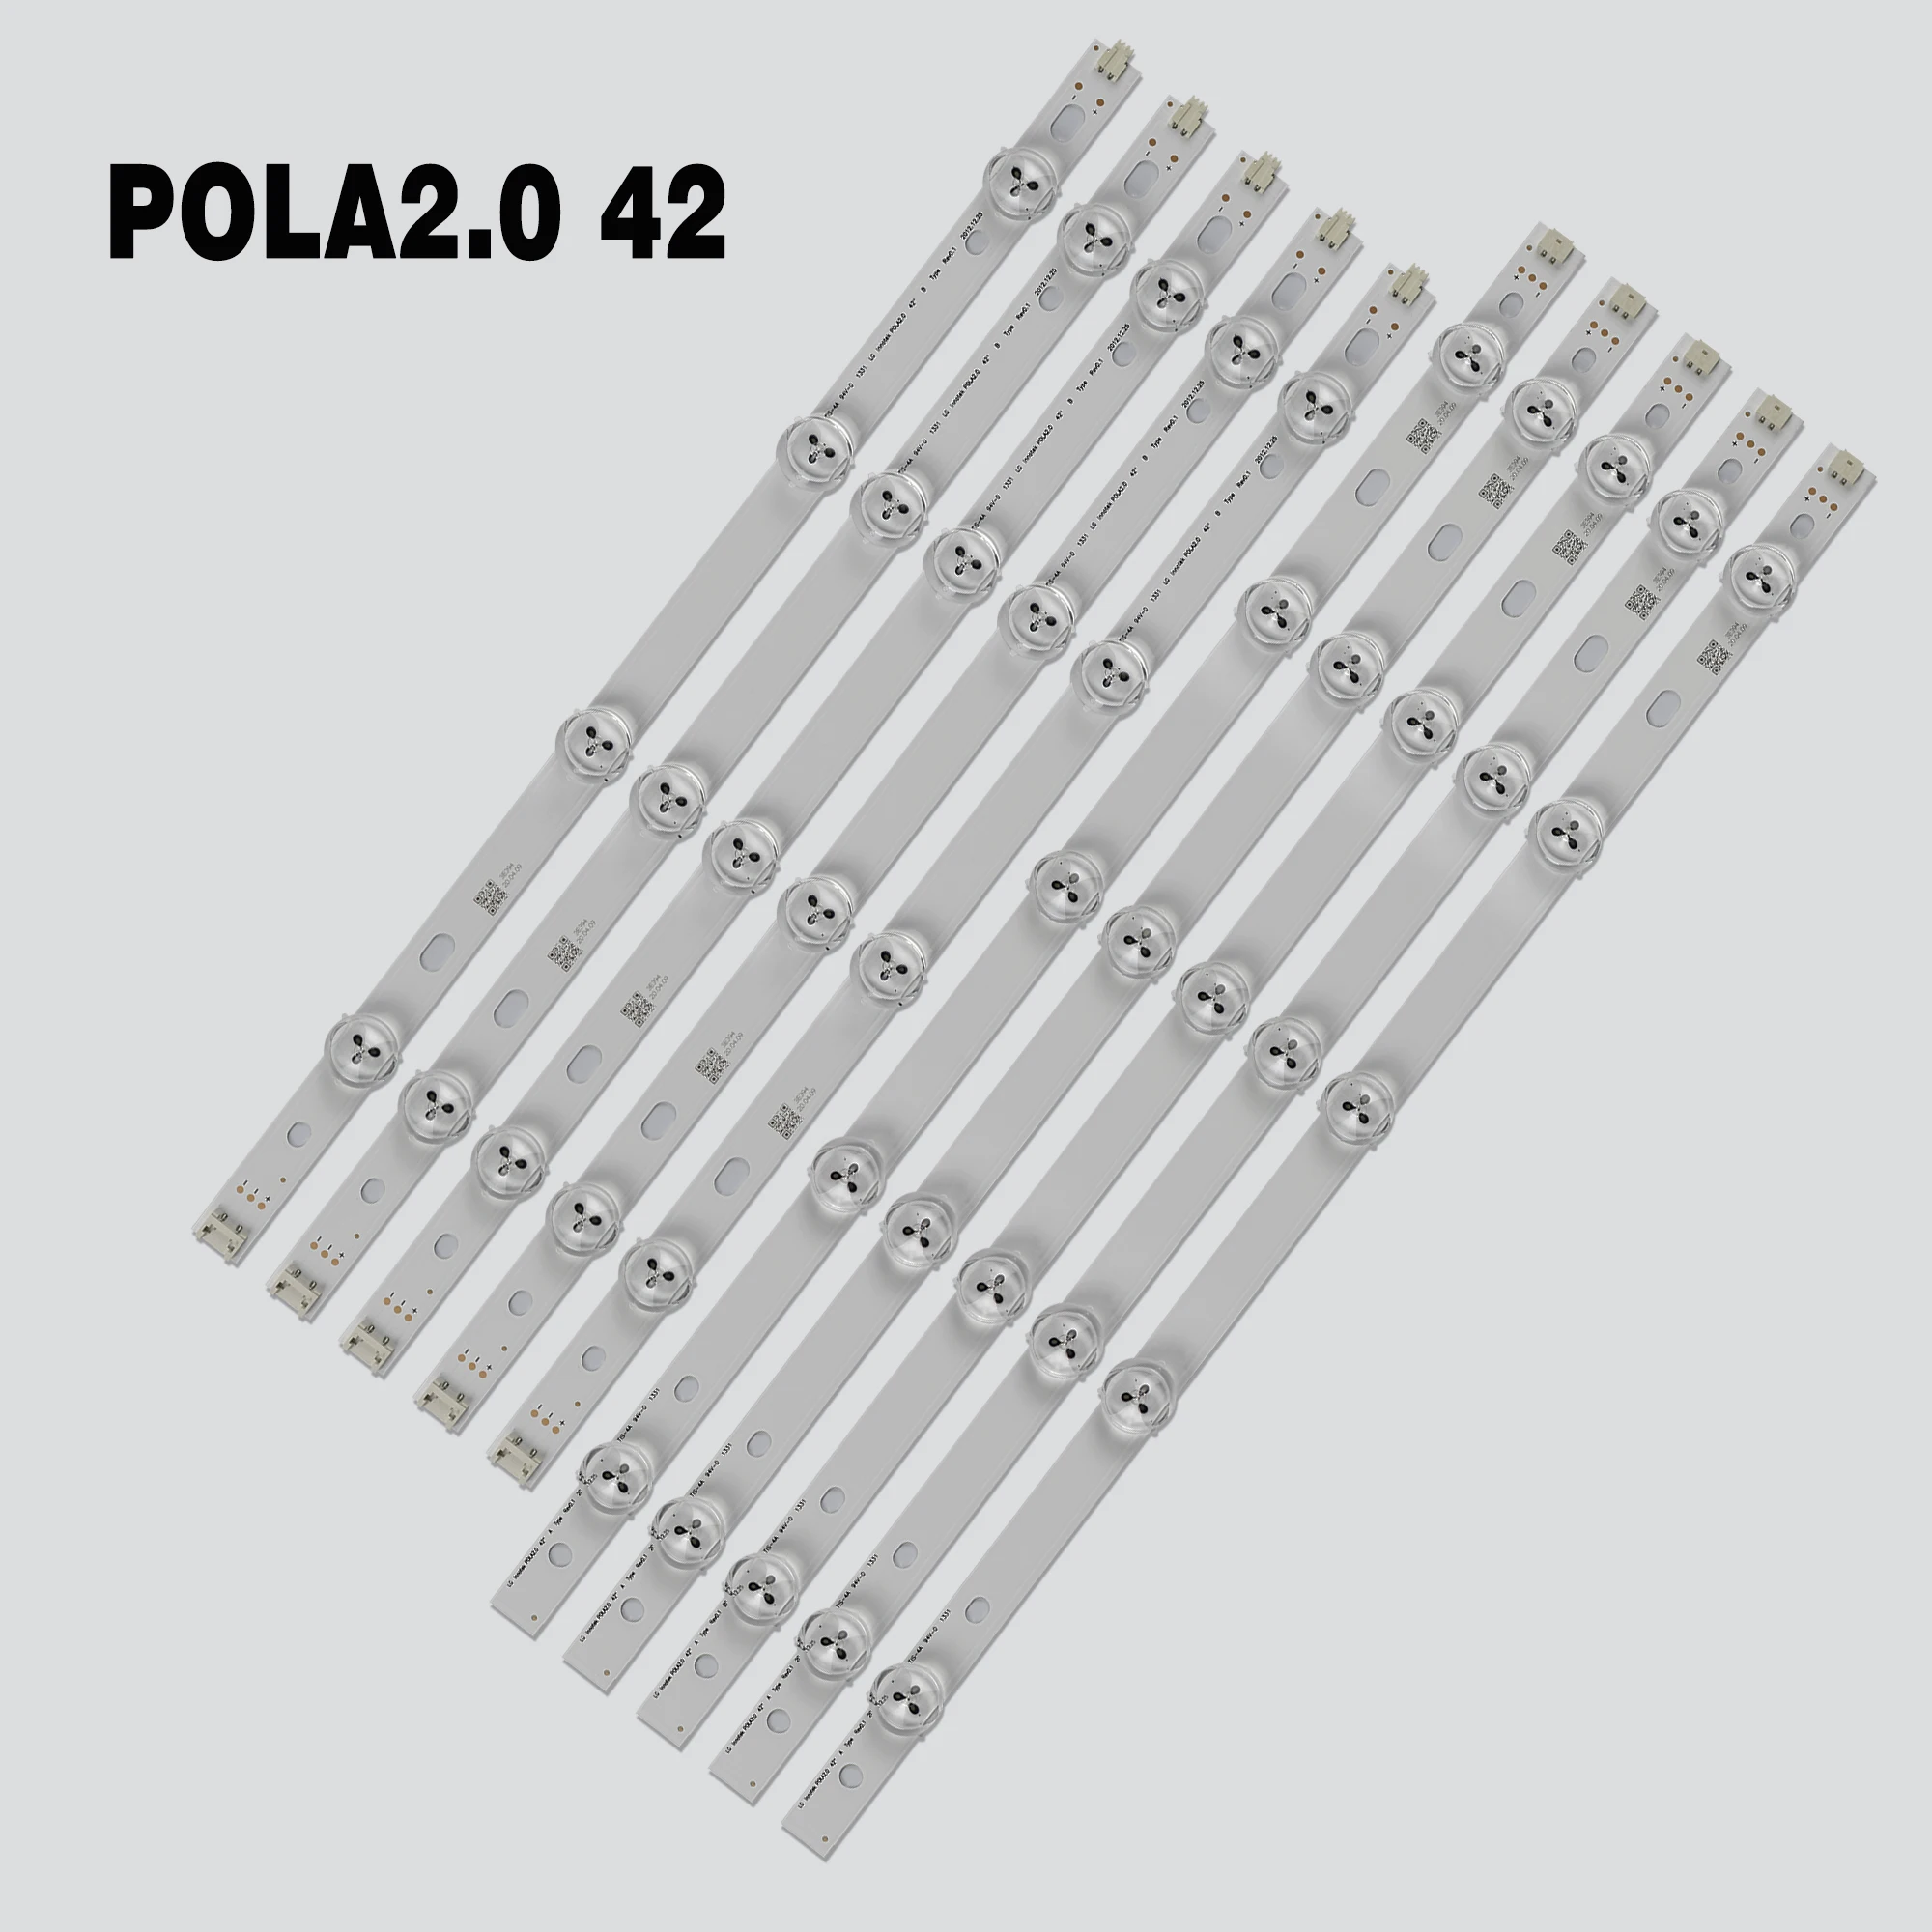 

LED strip 9led For LG INNOTEK POLA2.0 42" A/B TYPE Rev0.1 42LN5300 42LN5406-ZA 42LN5750 42LN5300 T420HVN05.0 42LN540R 42LN540B